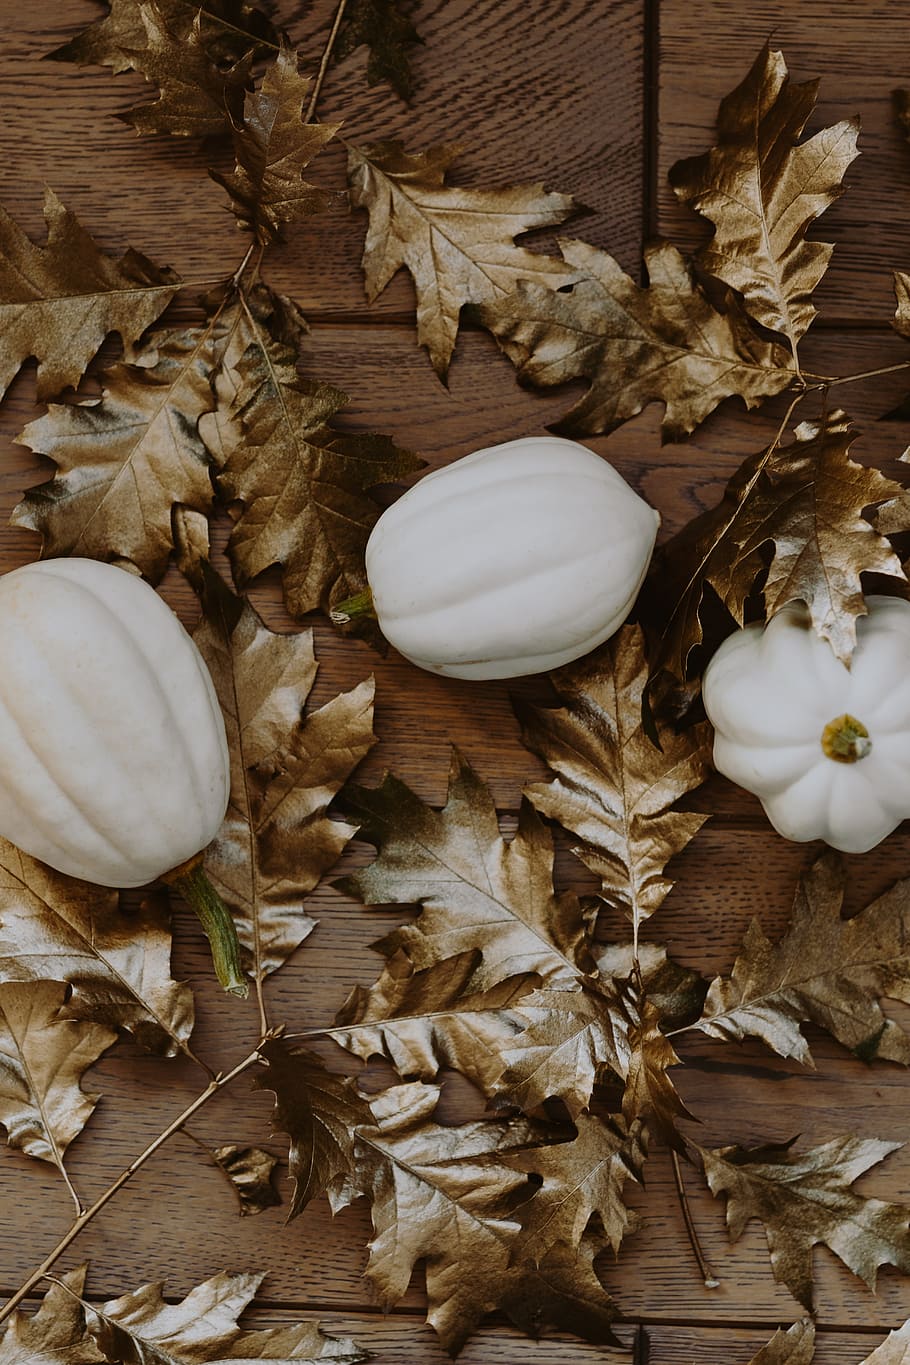 putih, labu, emas, ek, daun, kulit pumkin putih, daun ek, daun dicat, musim gugur, dekorasi